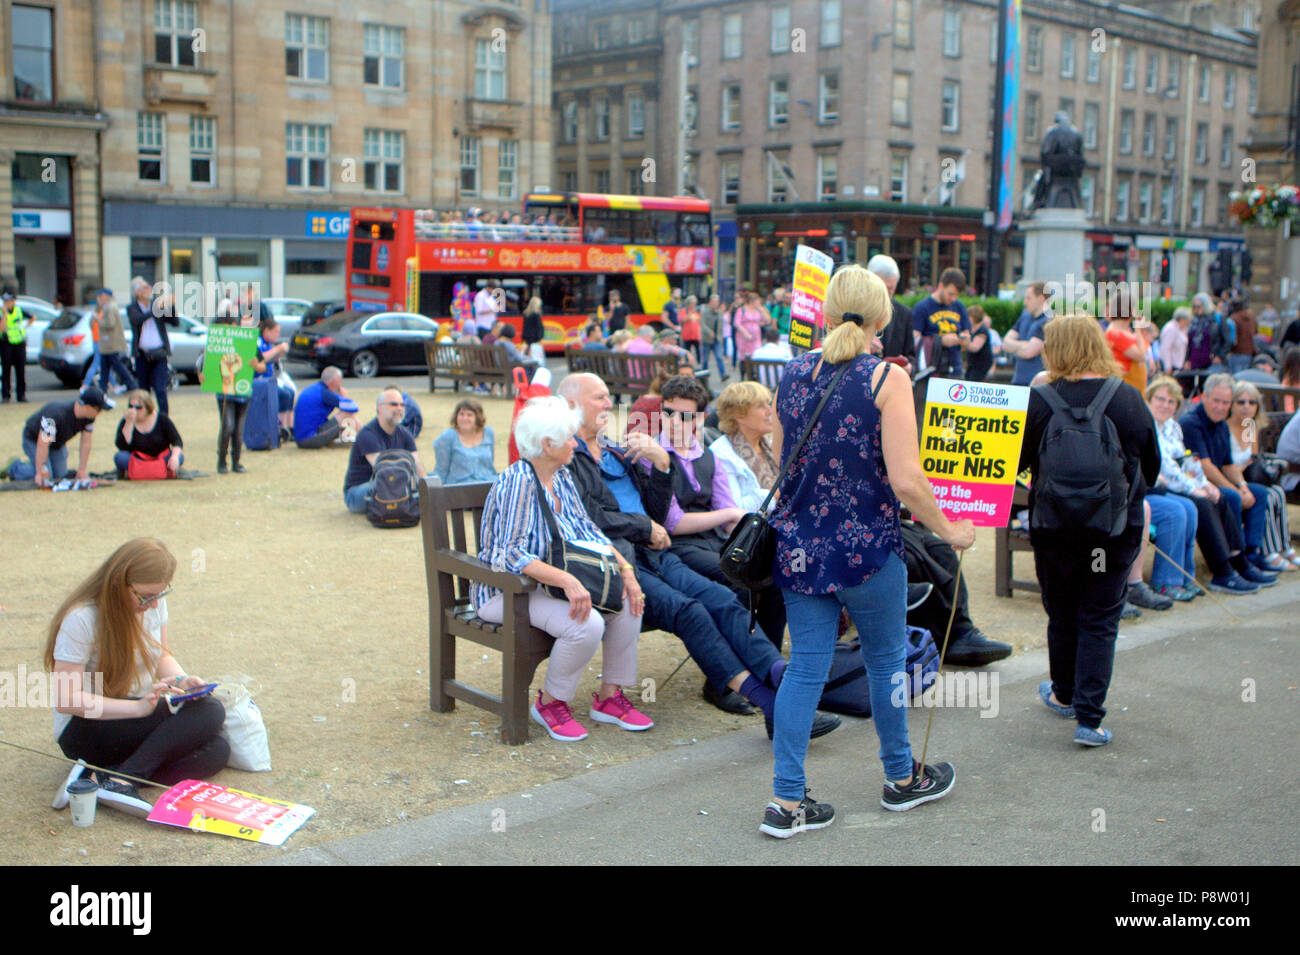 Glasgow, Schottland, Großbritannien, 13. Juli. Donald Trump weltweit Protest unterstützt auf dem George Square, dem Civic und administrative Zentrum des city.Organized durch Schottland gegen Trumpf es zu erwarten war 5000 Unterstützer gewinnen. Gerard Fähre / alamy Nachrichten Stockfoto